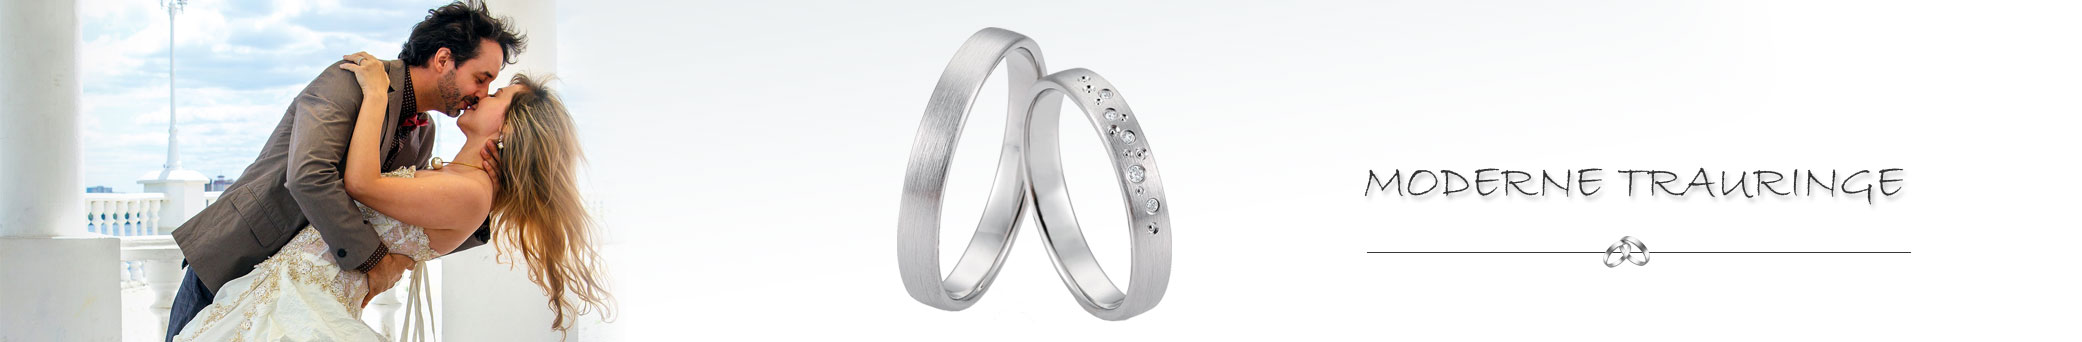 Moderne Ehe Ringe